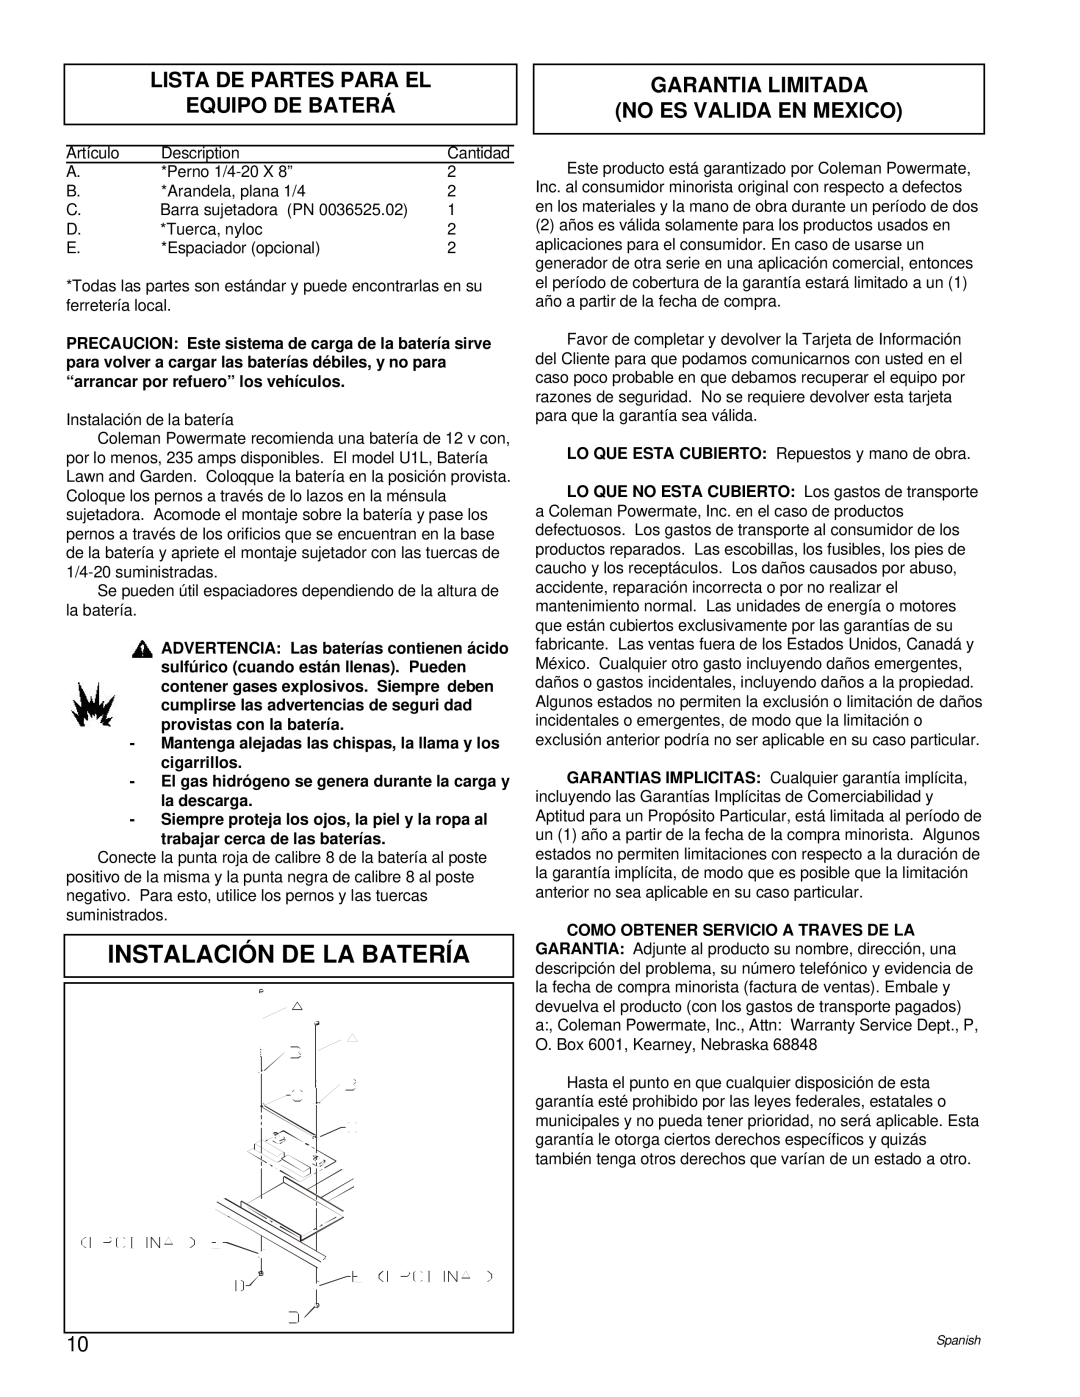 Powermate PC0496503.17 manual Instalación De La Batería, Lista De Partes Para El Equipo De Baterá 